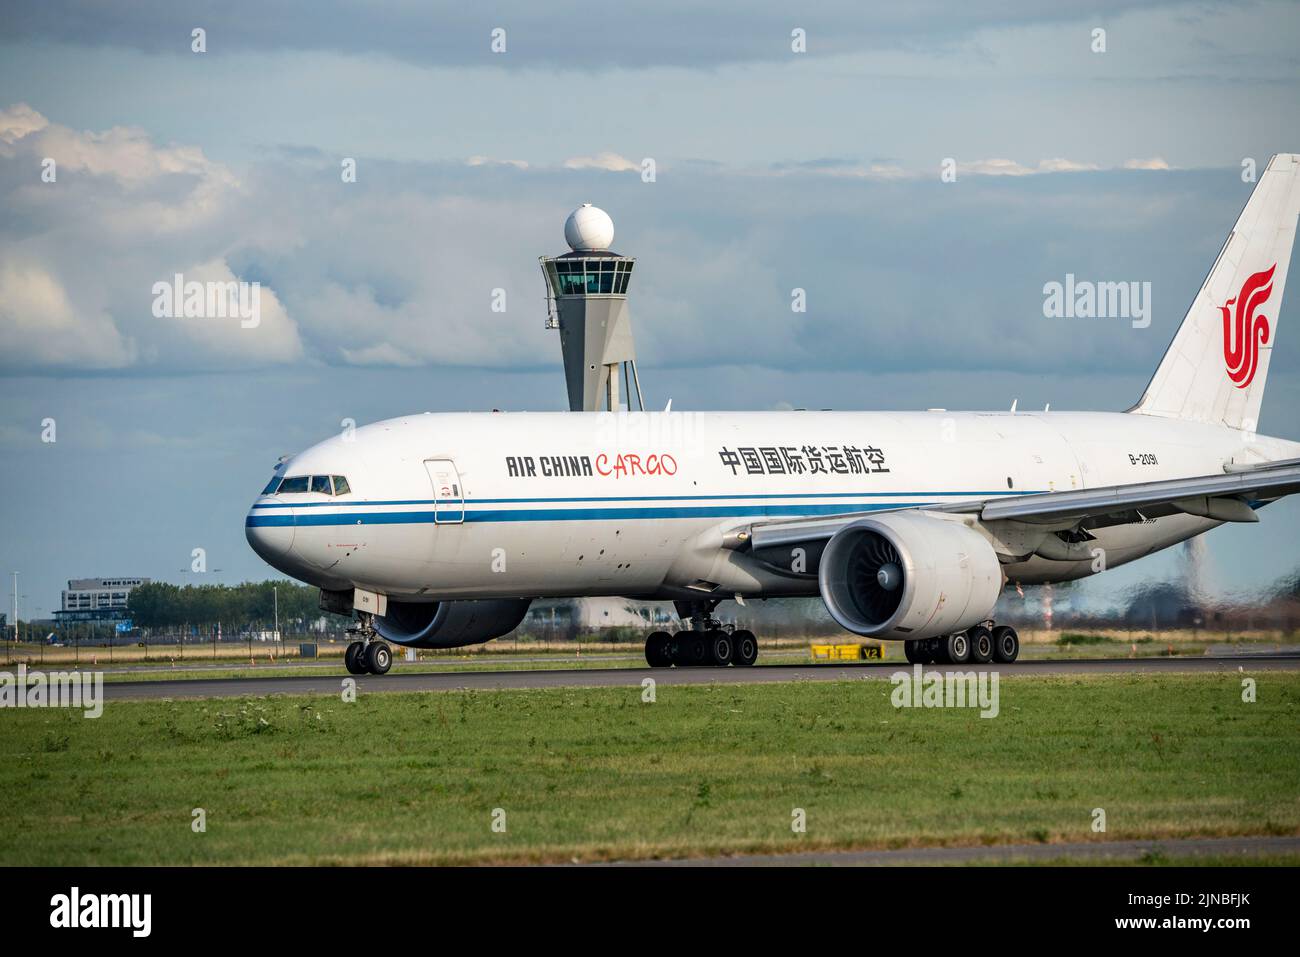 Aeroporto di Amsterdam Shiphol, Ponderbaan, una delle 6 piste, B-2091 Air China Cargo Boeing 777F, decollo, Foto Stock